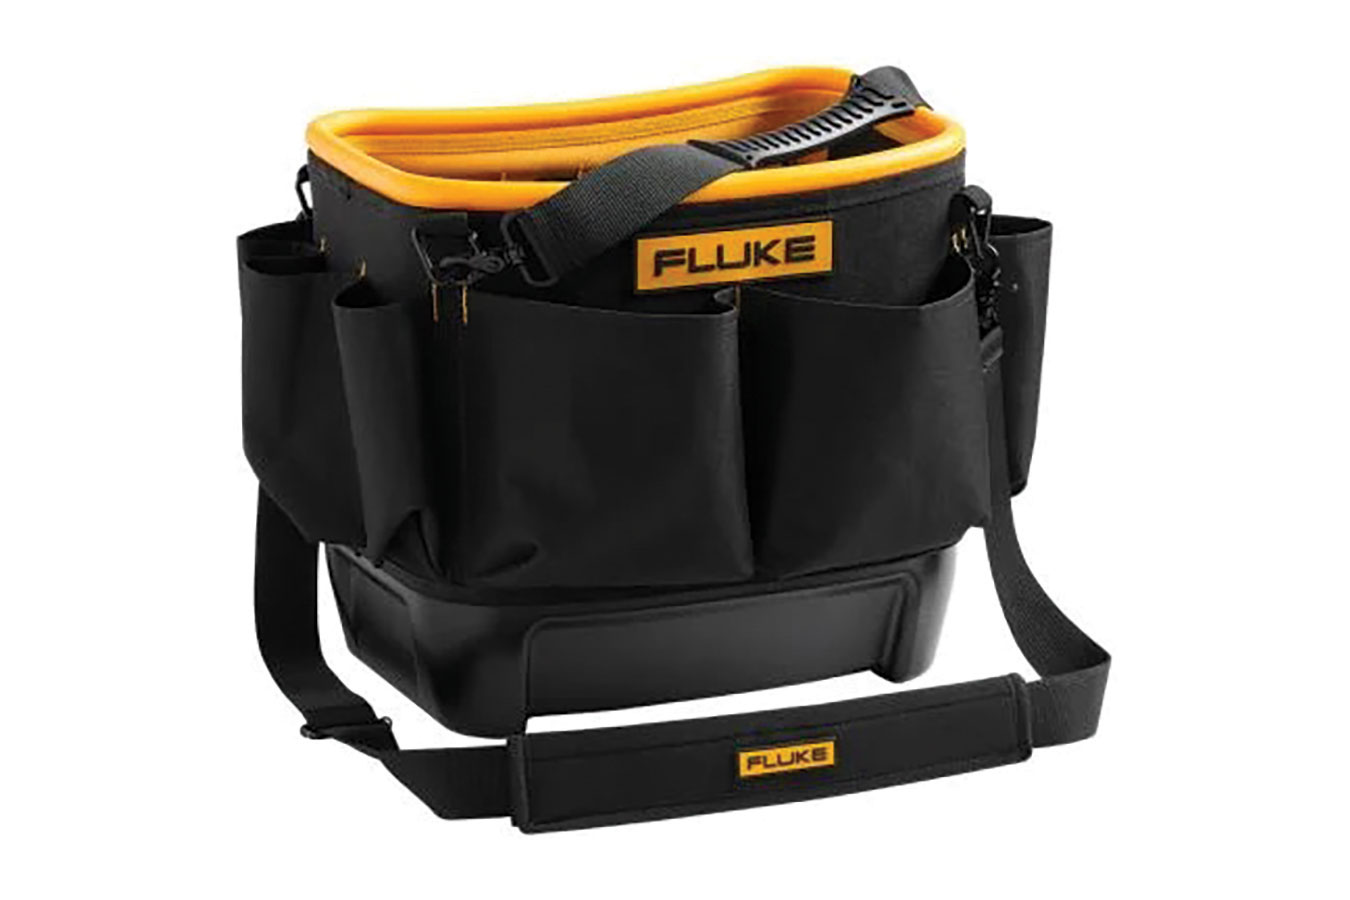 Black and yellow bag labeled Fluke. Image by Fluke.